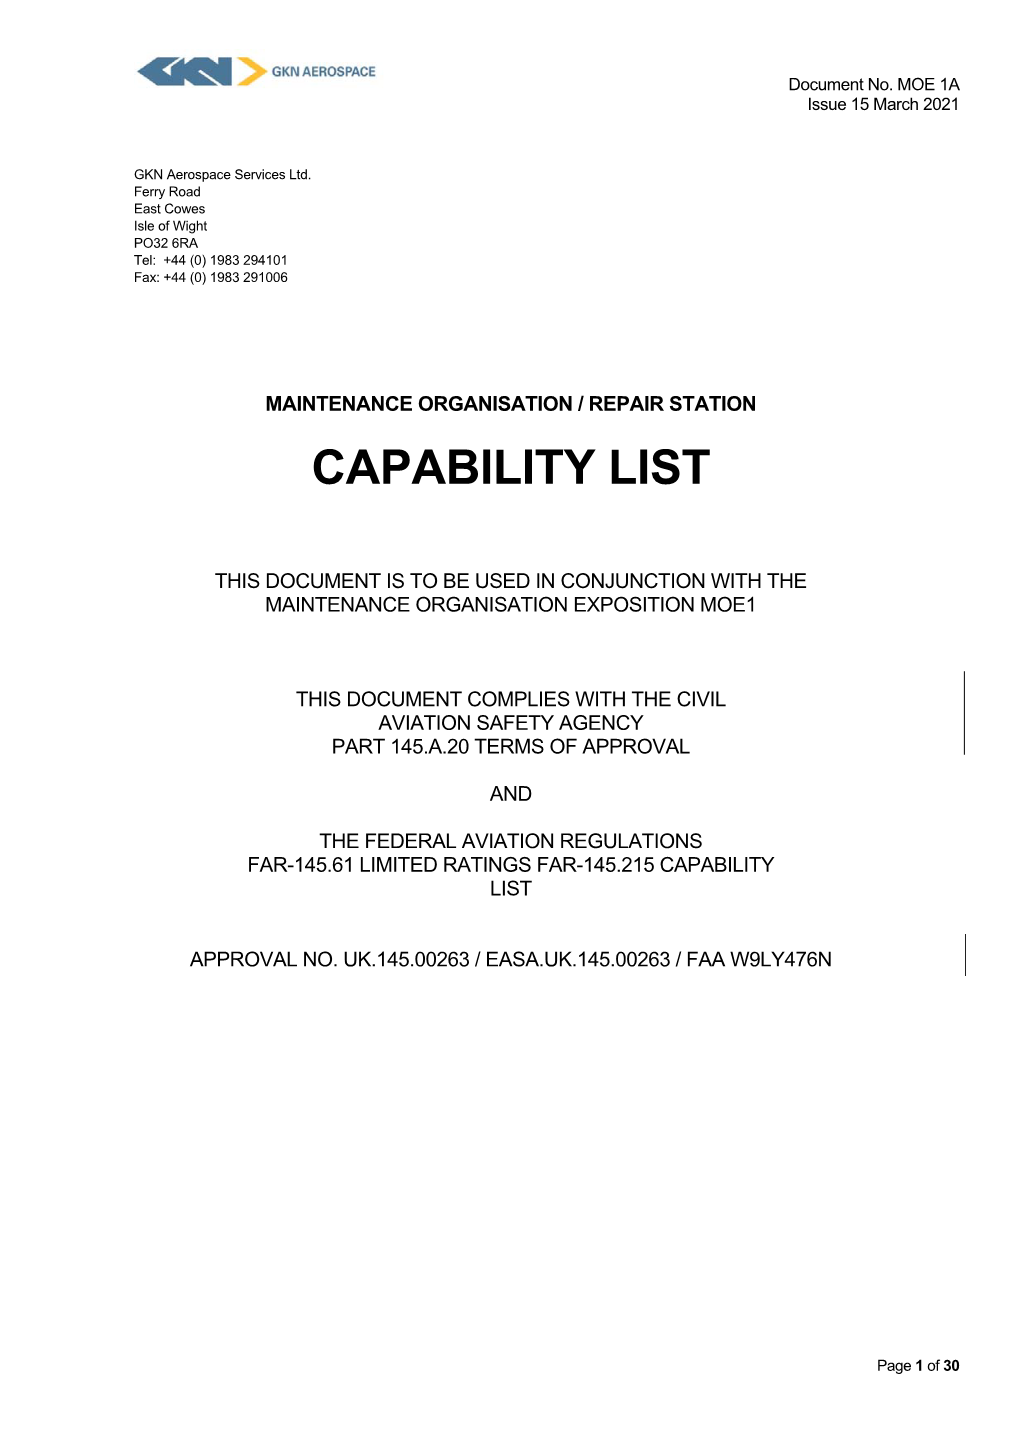 Capability List